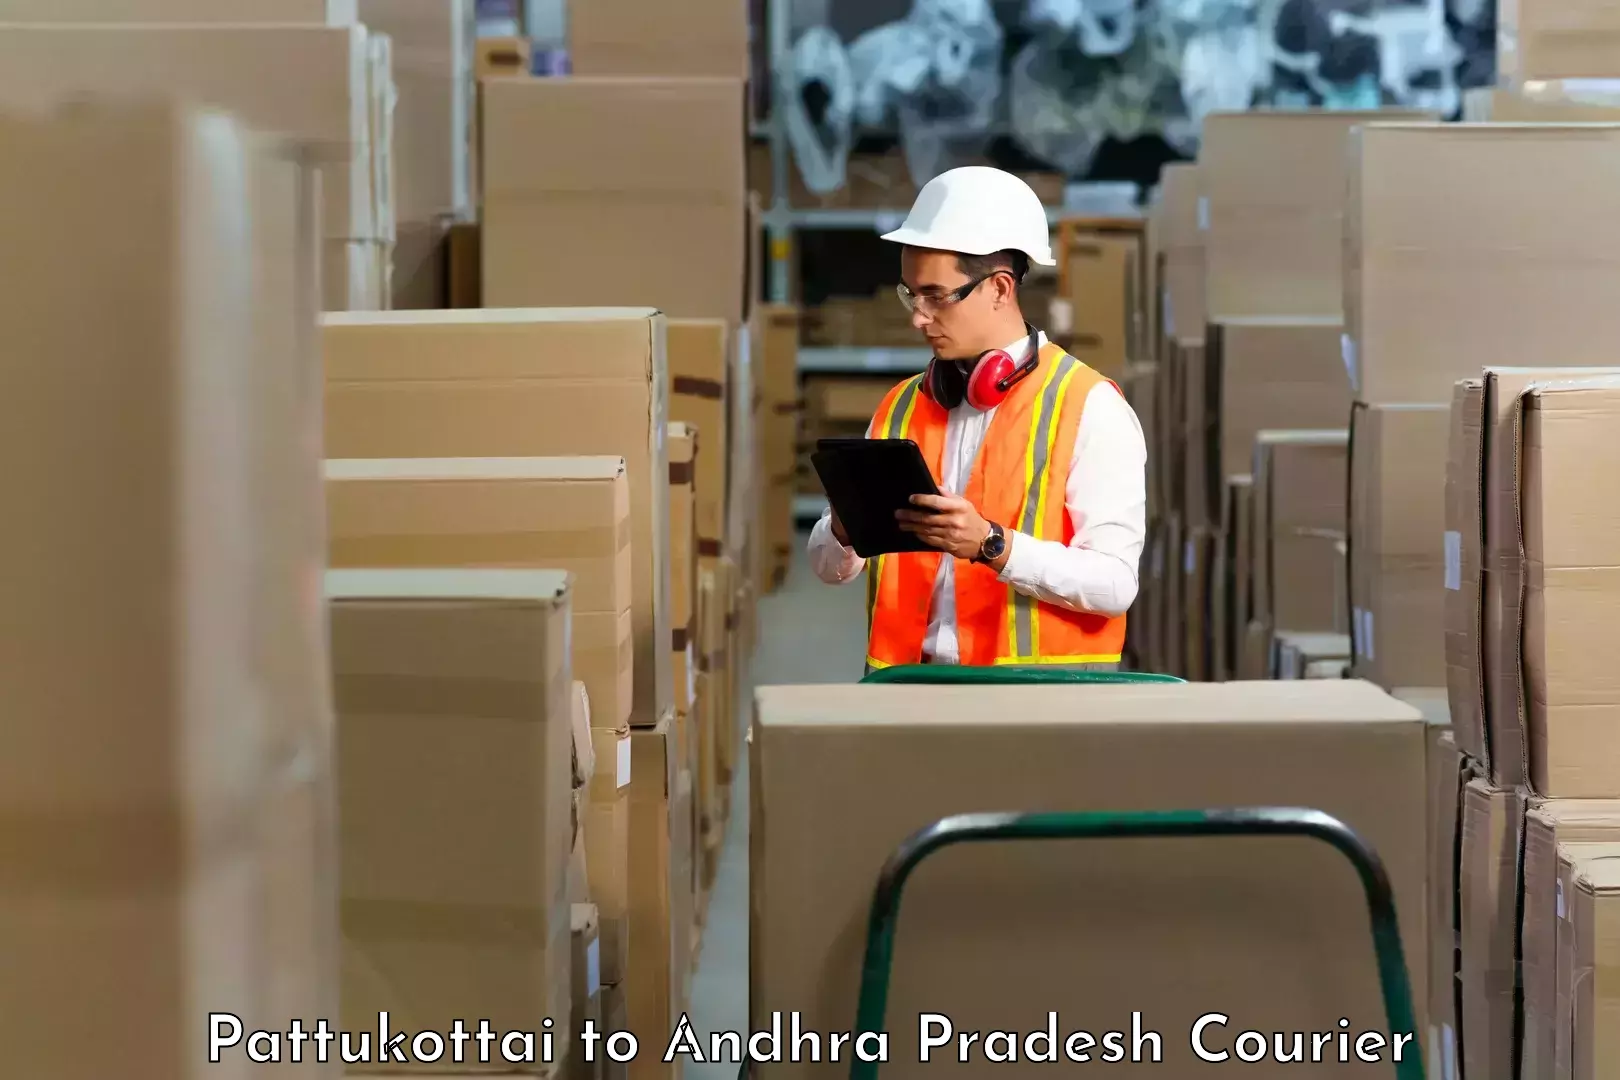 Professional courier handling Pattukottai to Yerravaram